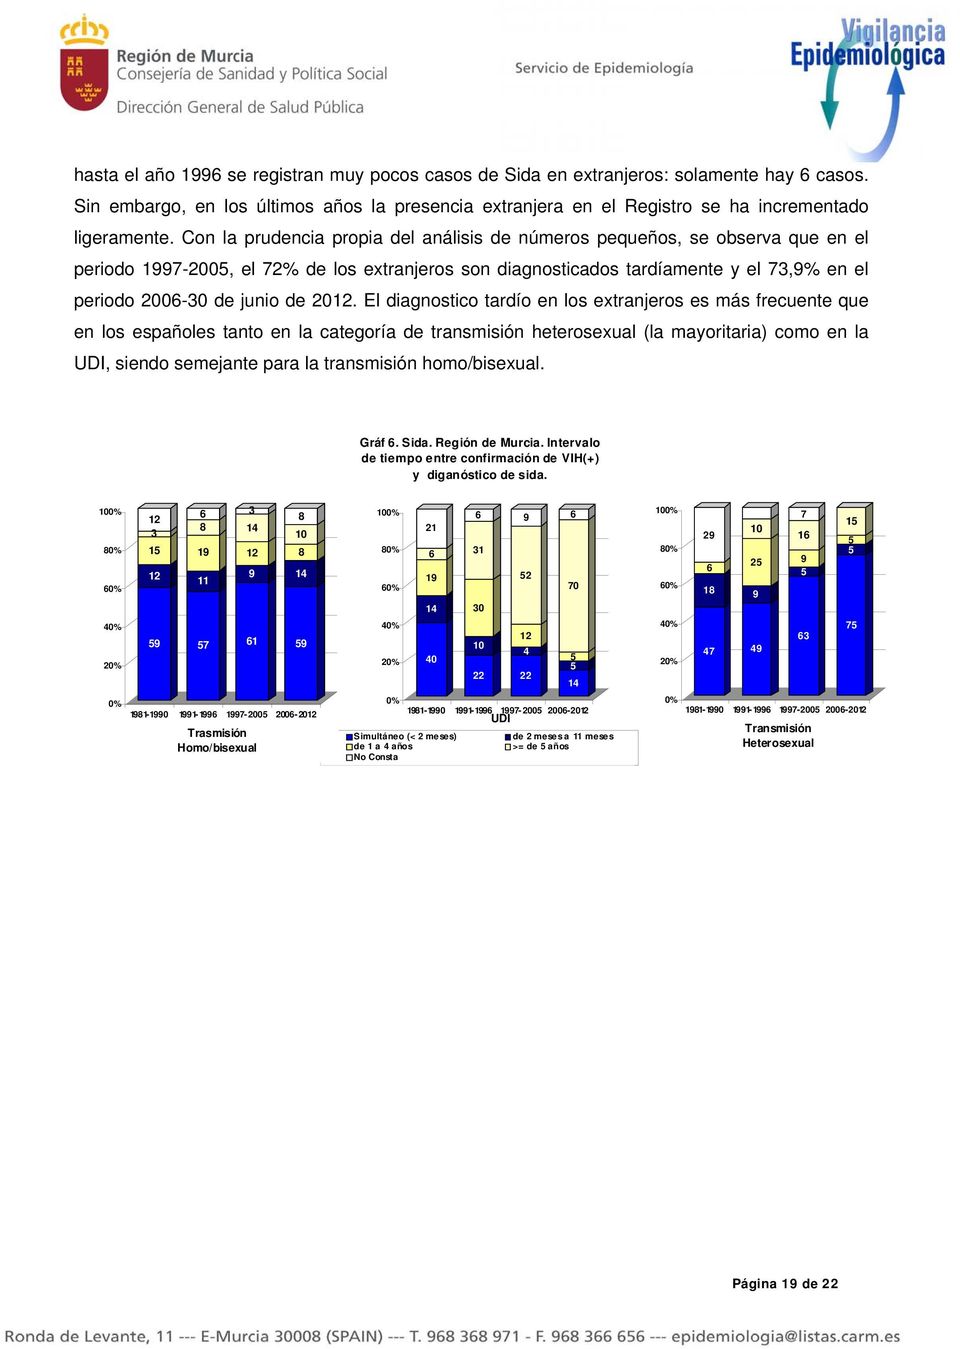 2012. El diagnostico tardío en los extranjeros es más frecuente que en los españoles tanto en la categoría de transmisión heterosexual (la mayoritaria) como en la UDI, siendo semejante para la